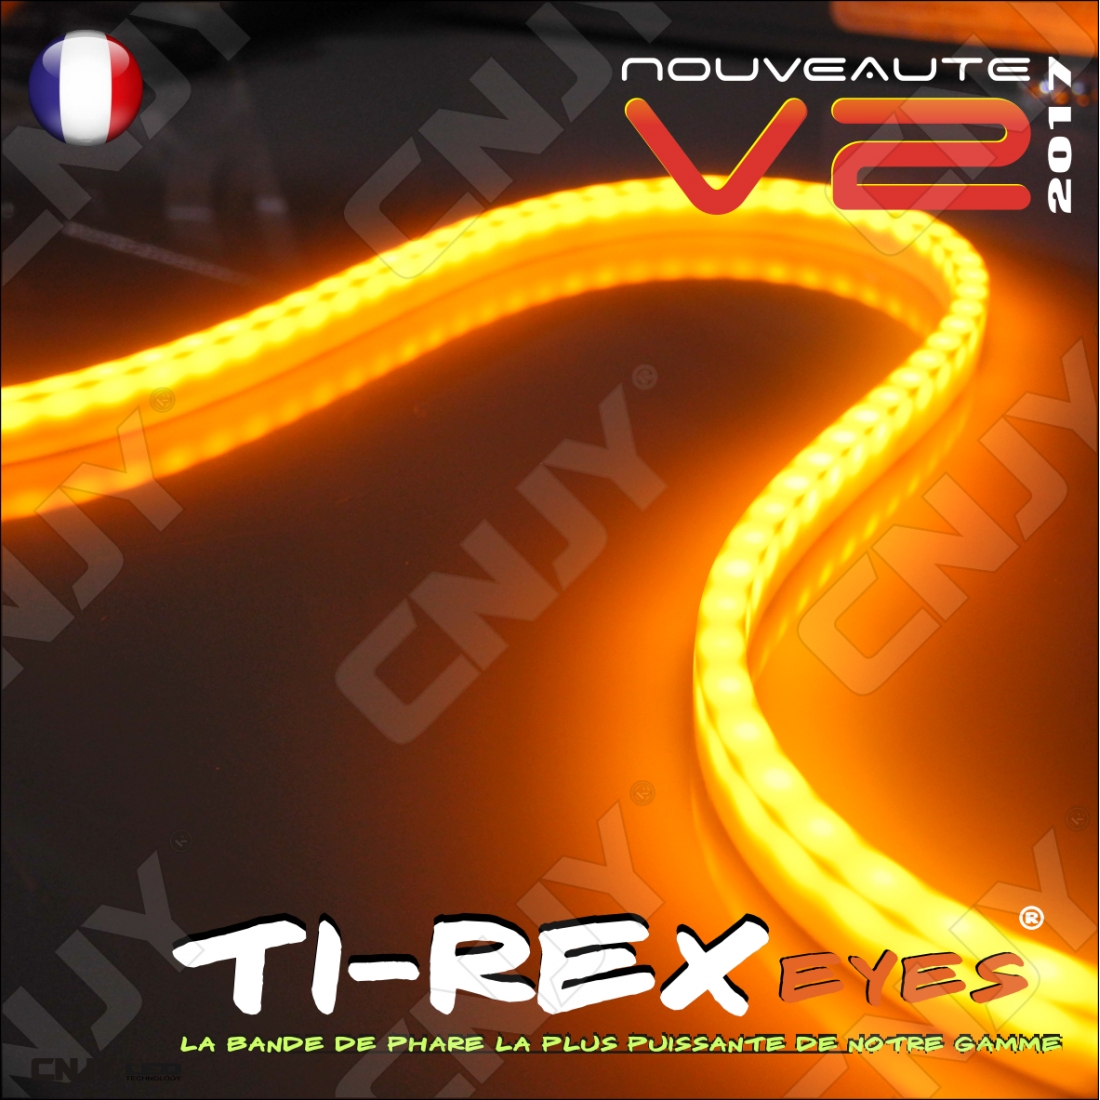 https://www.cnjy-led.fr/5931-thickbox_default/kit-2-bandes-led-ti-rex-v2-60cm-orange-strip-souple-pour-clignotant-sous-phare-12v-ip68-120ledm.jpg